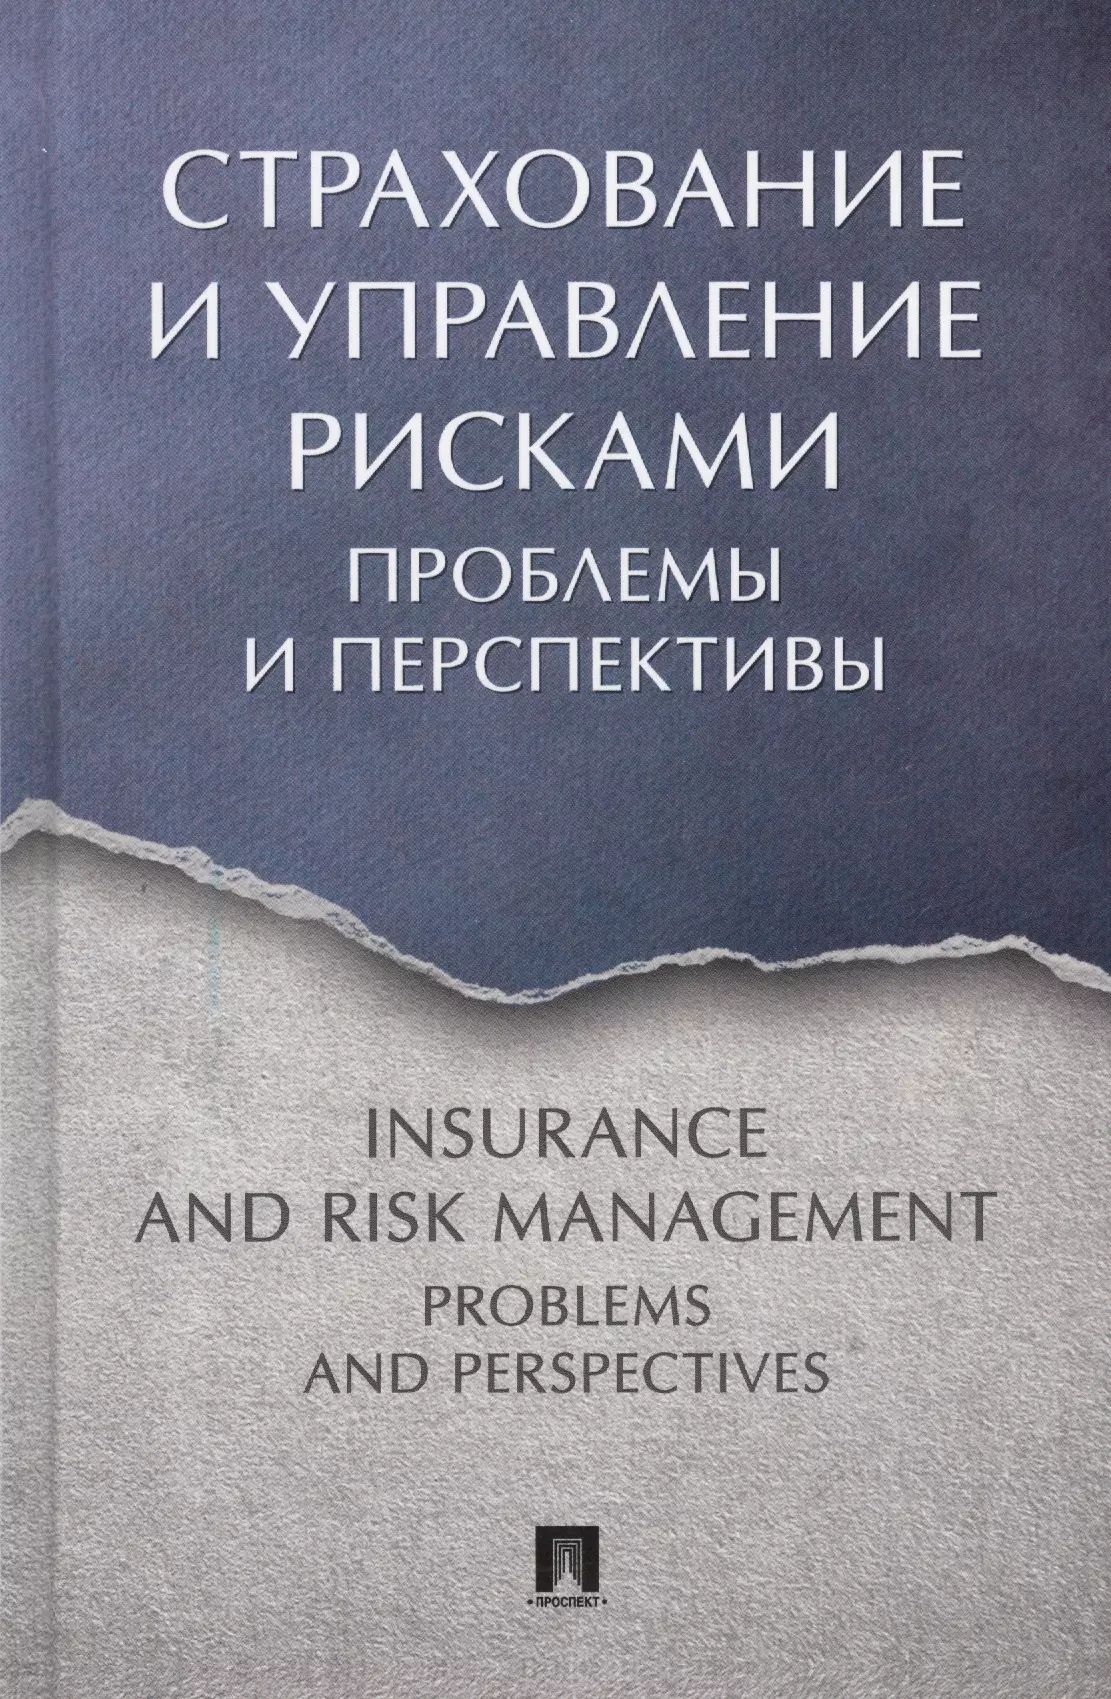 Страхование и управление рисками: проблемы и перспективы. Монография